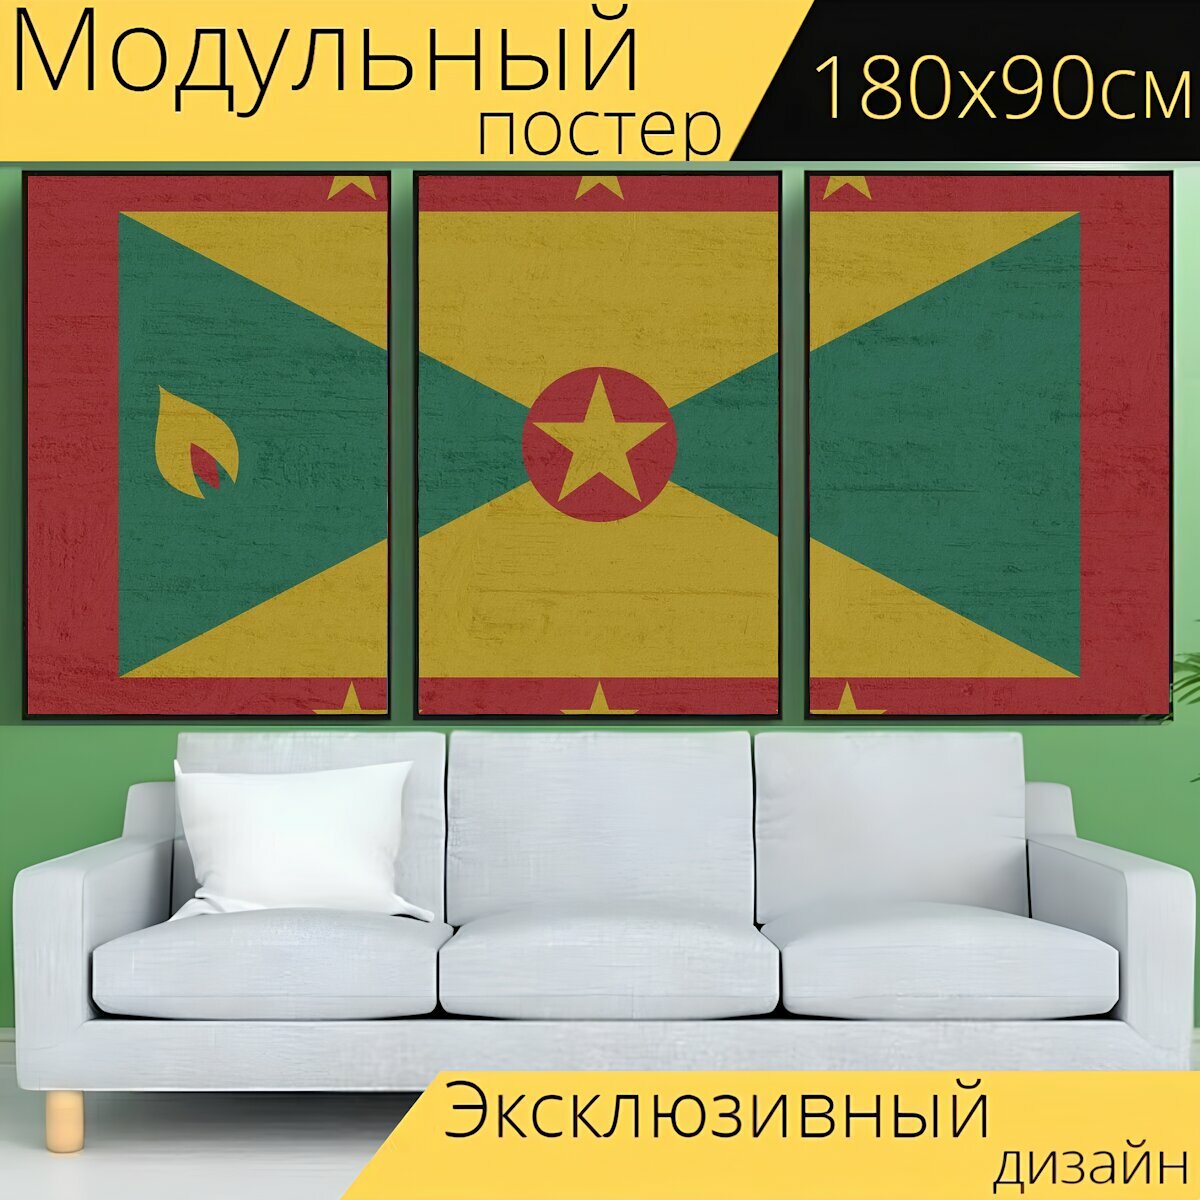 Модульный постер "Гренада, знамя, флаг" 180 x 90 см. для интерьера